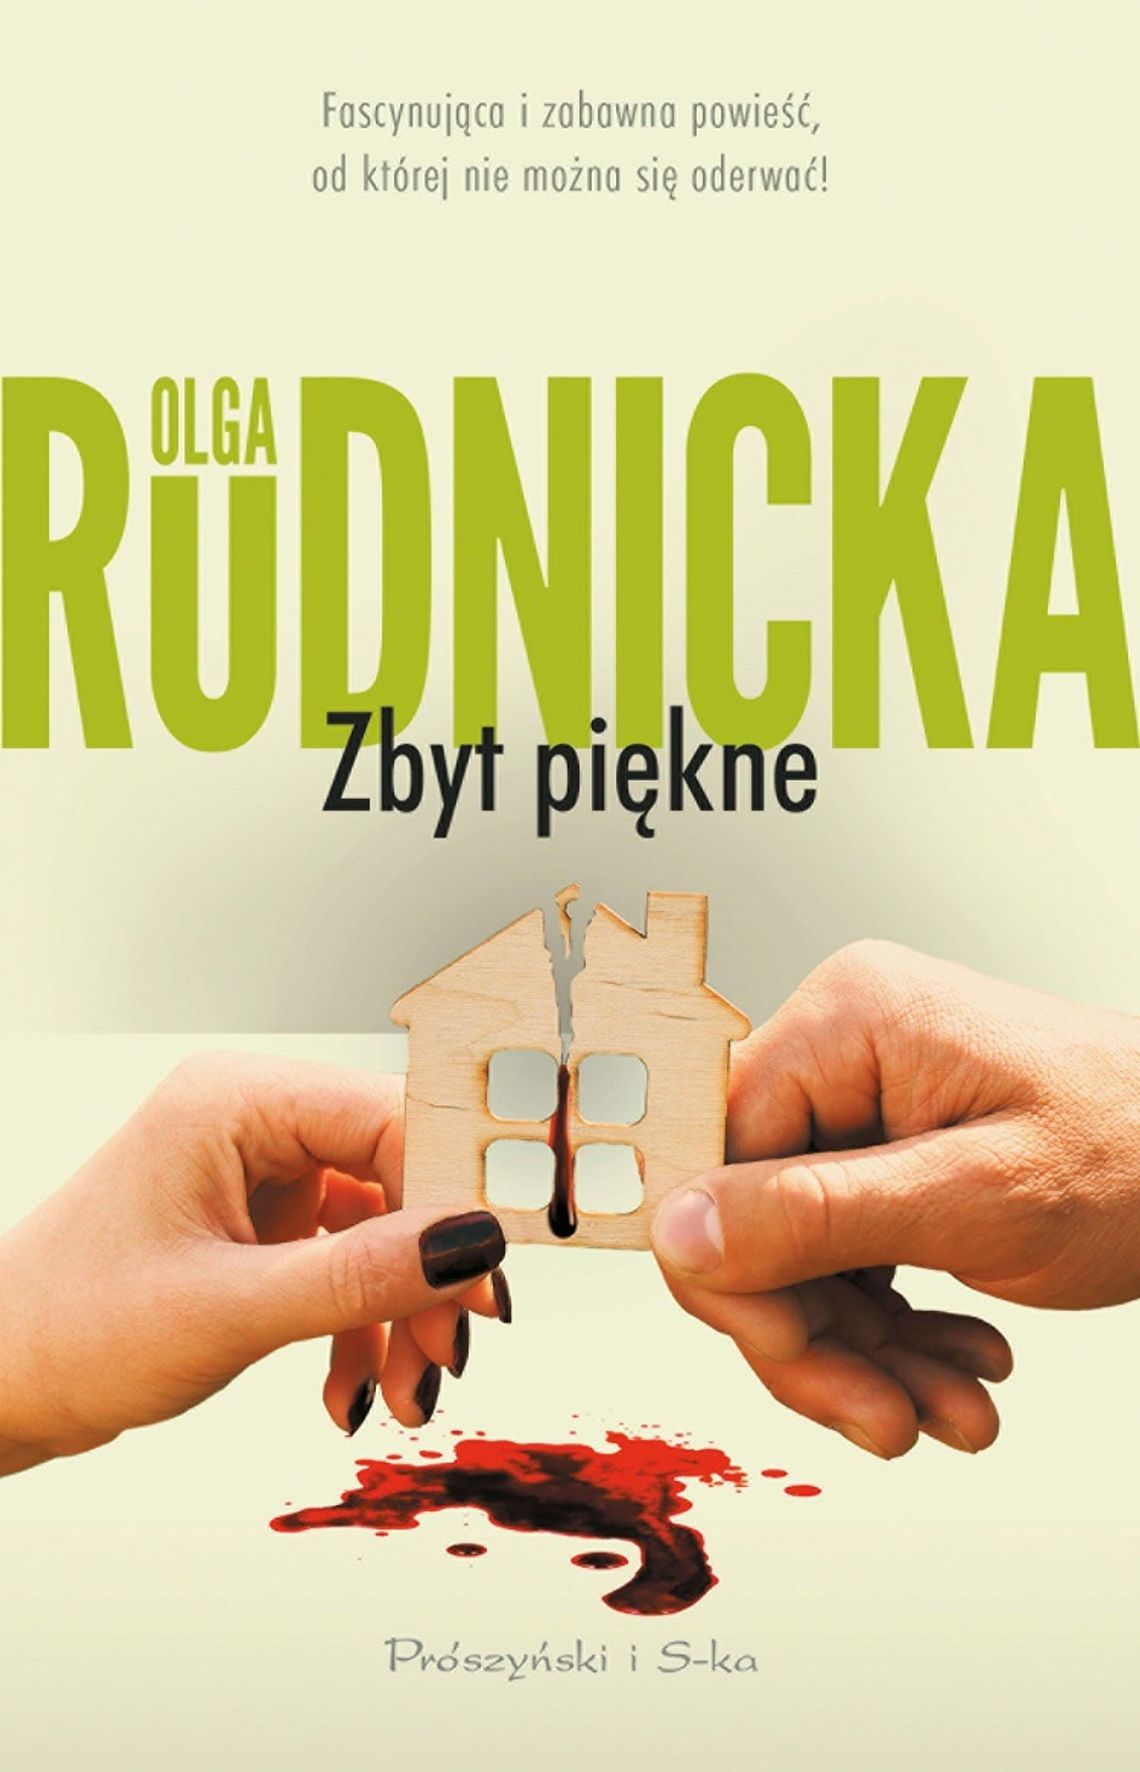 Olga Rudnicka "Zbyt piękne"; wyd. Prószyński i S-ka